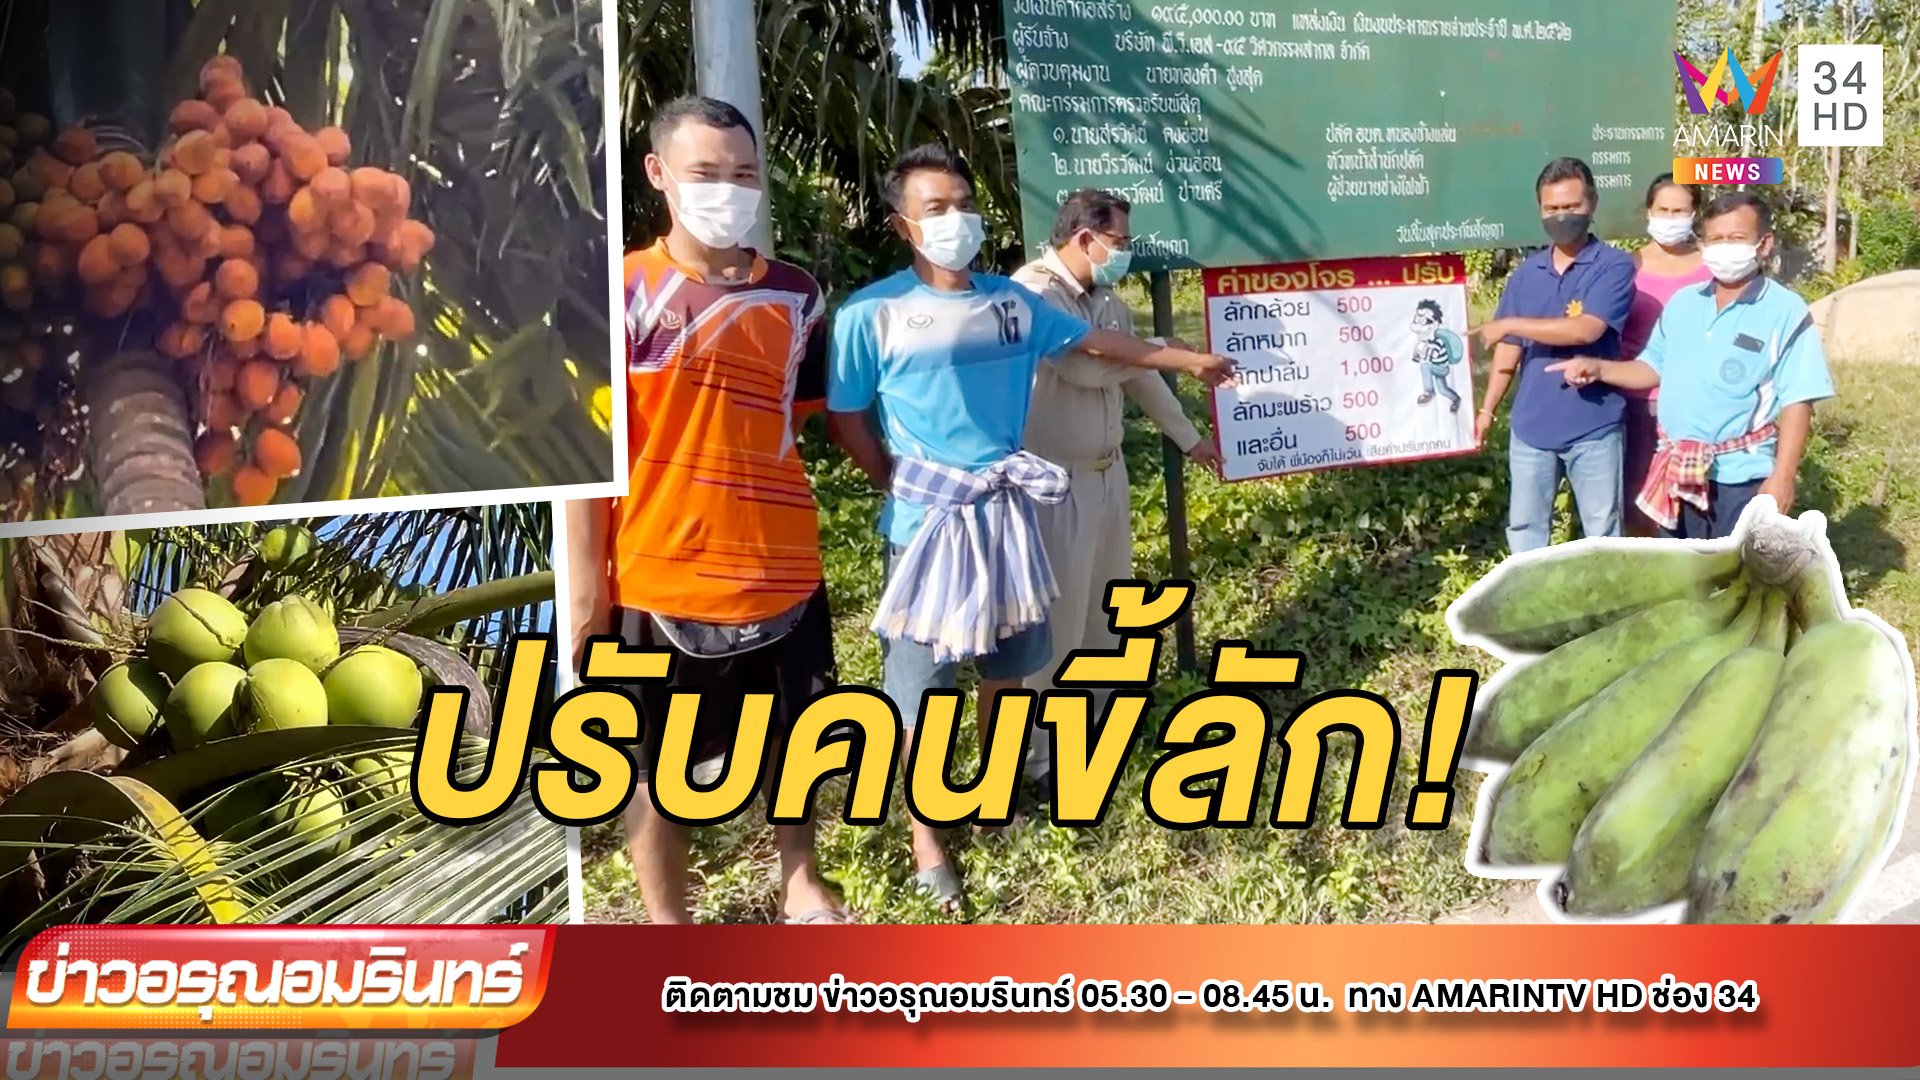 สุดทน! ชาวบ้านรวมตัวปักป้ายราคาหลังโจรขโมยพืชผลถี่ | ข่าวอรุณอมรินทร์ | 21 ม.ค. 65 | AMARIN TVHD34